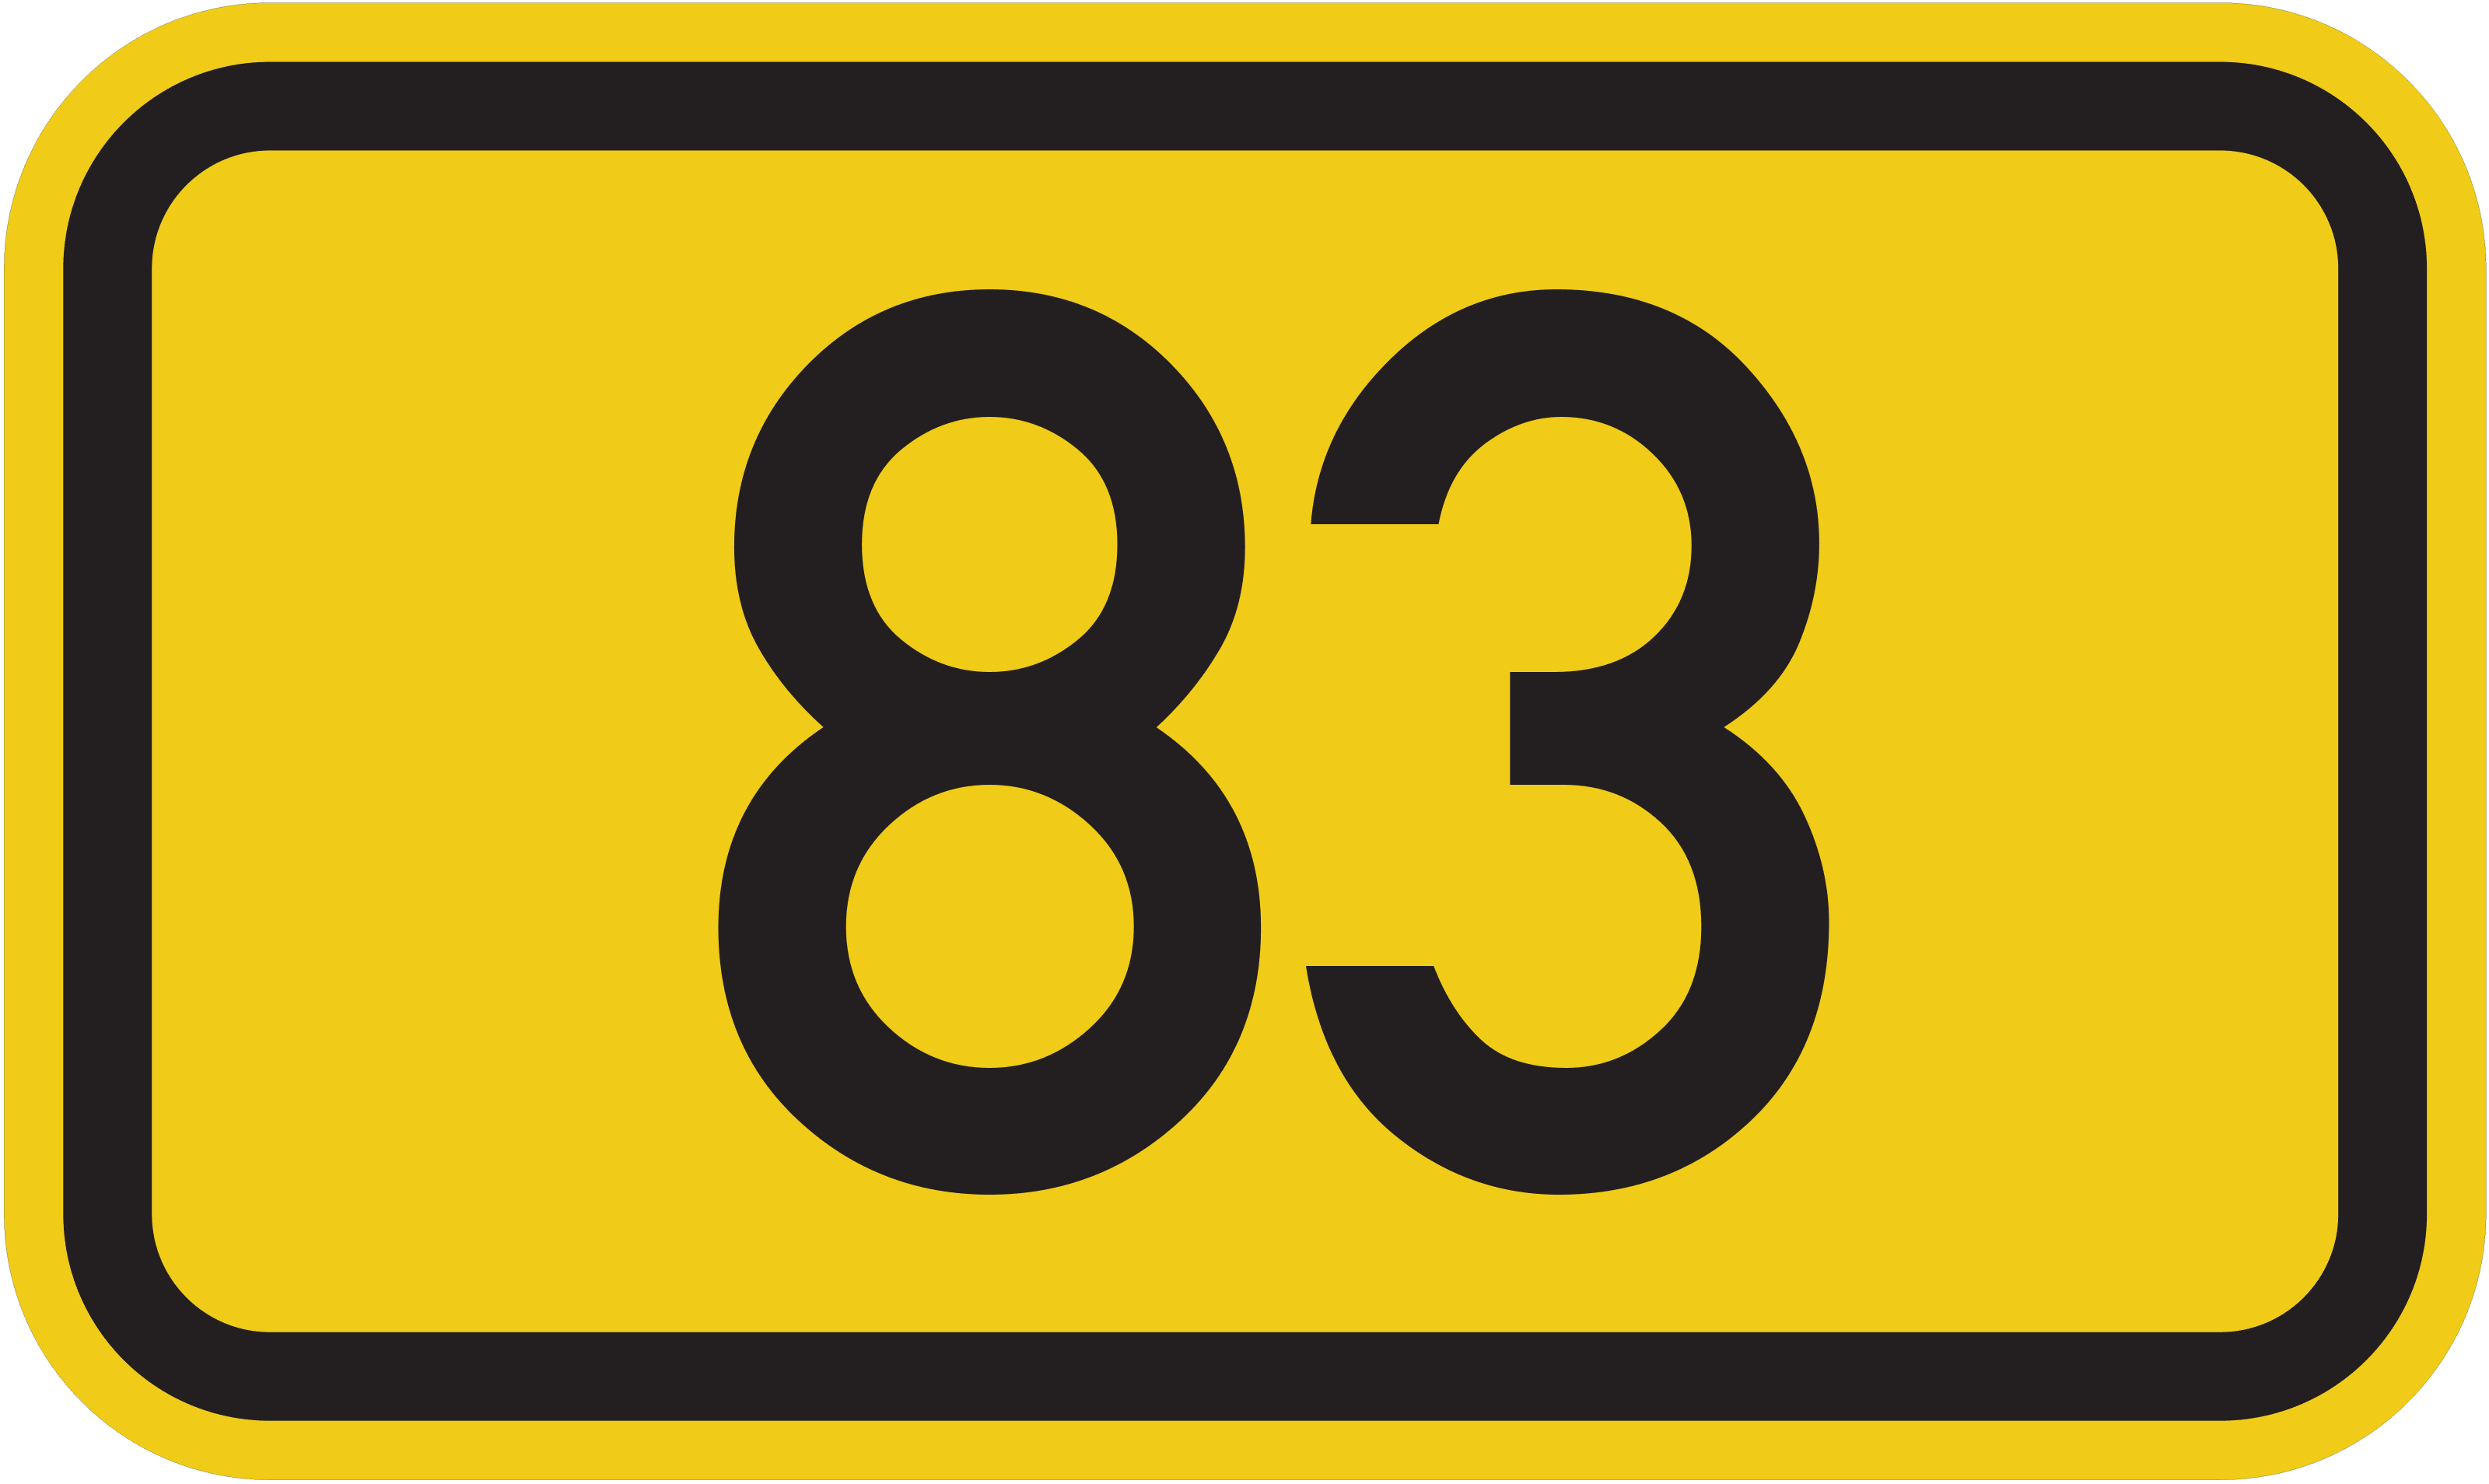 Bundesstraße B 83